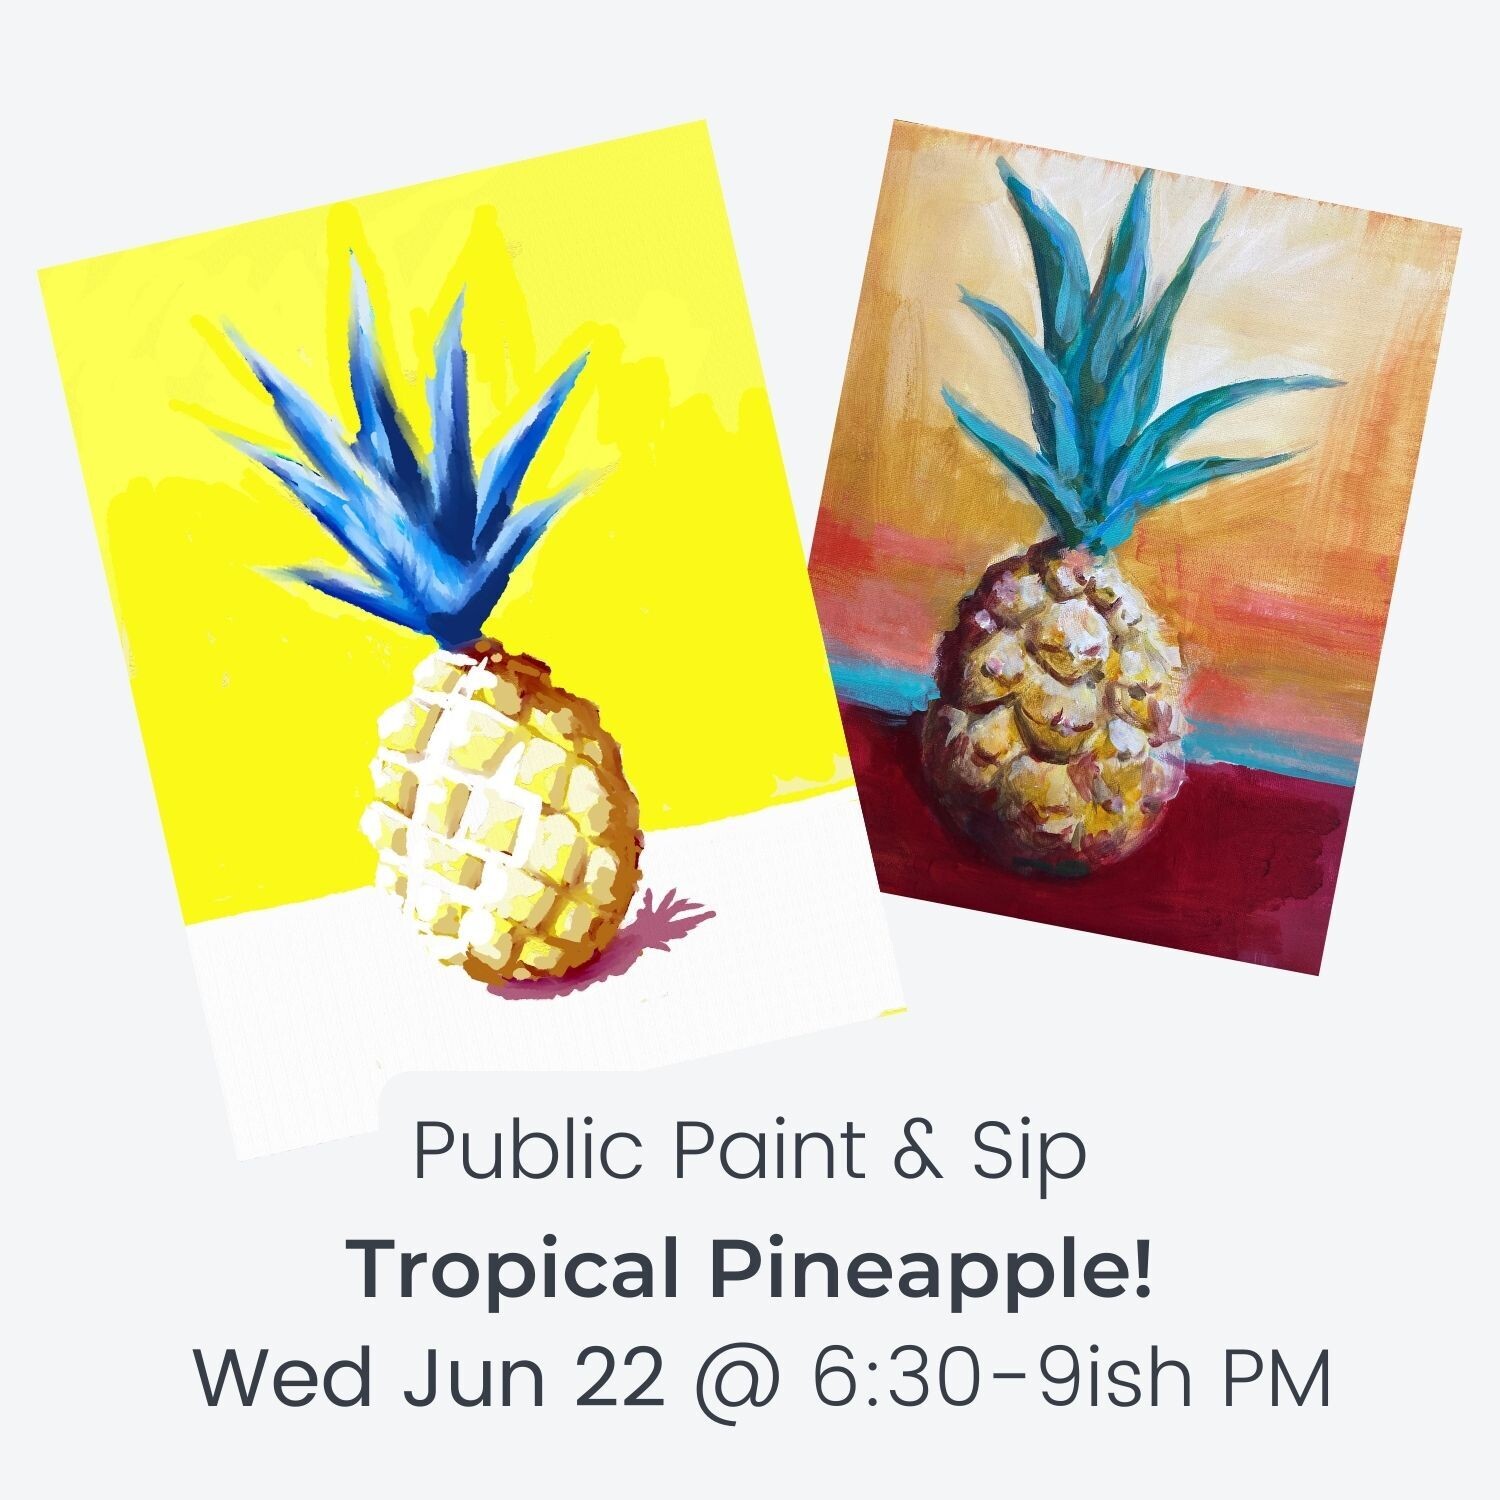 Tropical Pineapple - Wed Jun 22 @ 6:30-9ish PM